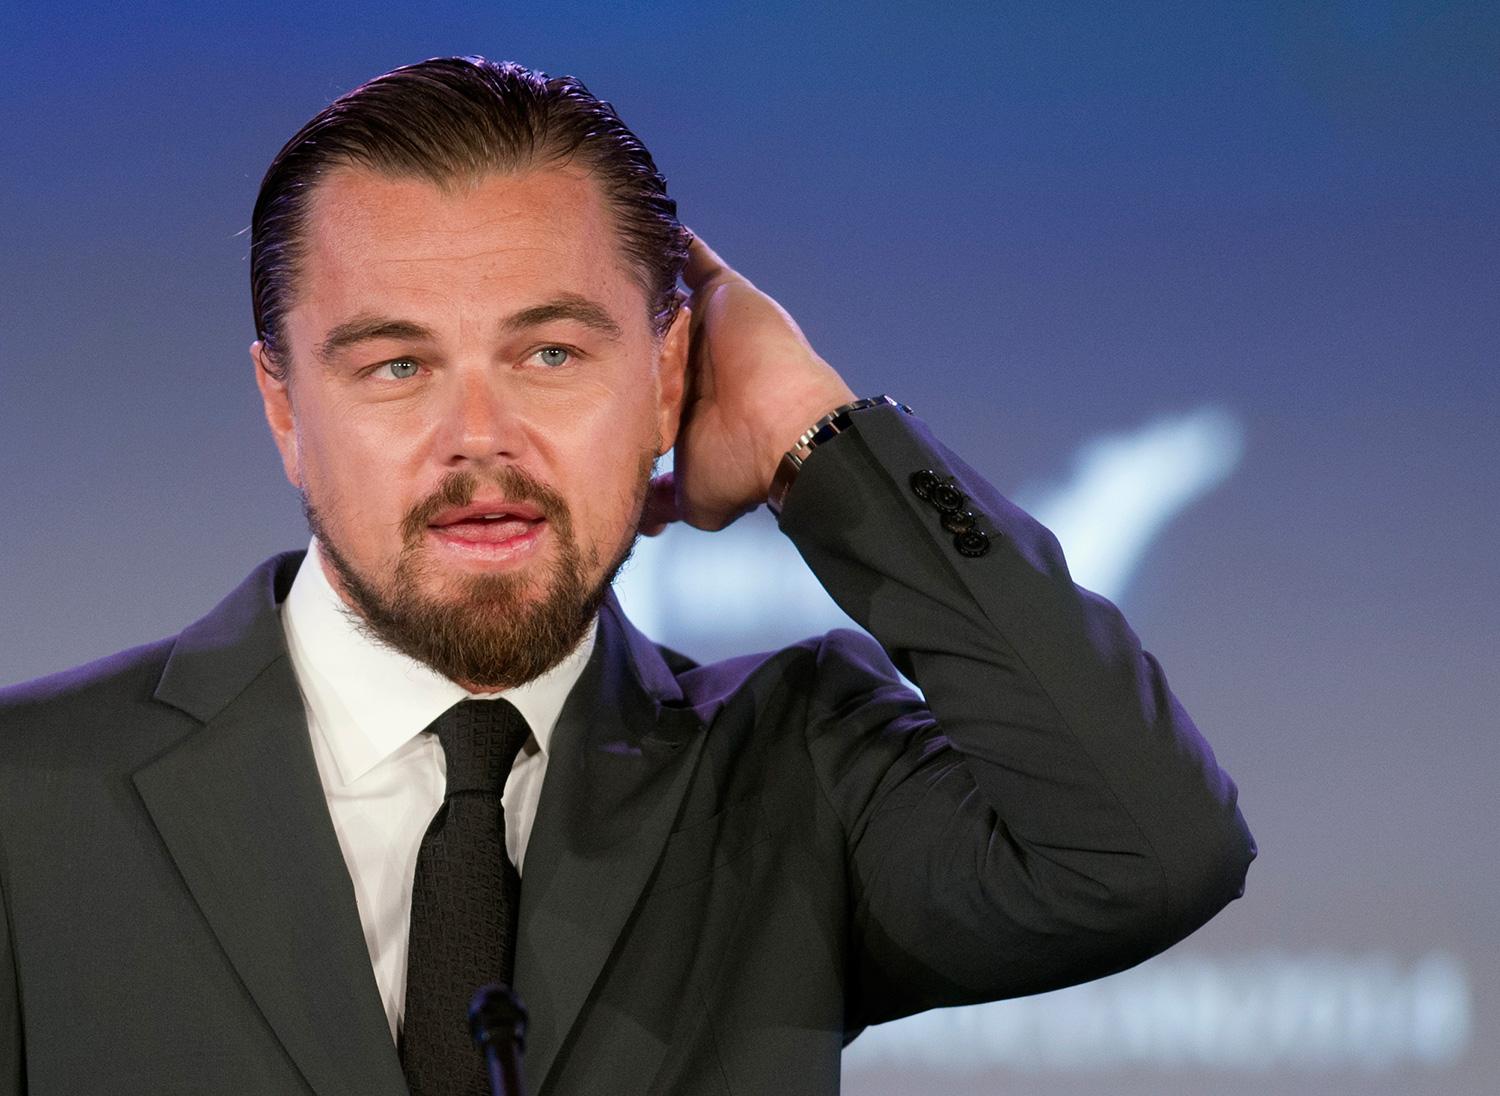 Filmbolaget Fox går nu ut och dementerar att Leonardo DiCaprio skulle ha blivit våldtagen av en björn.